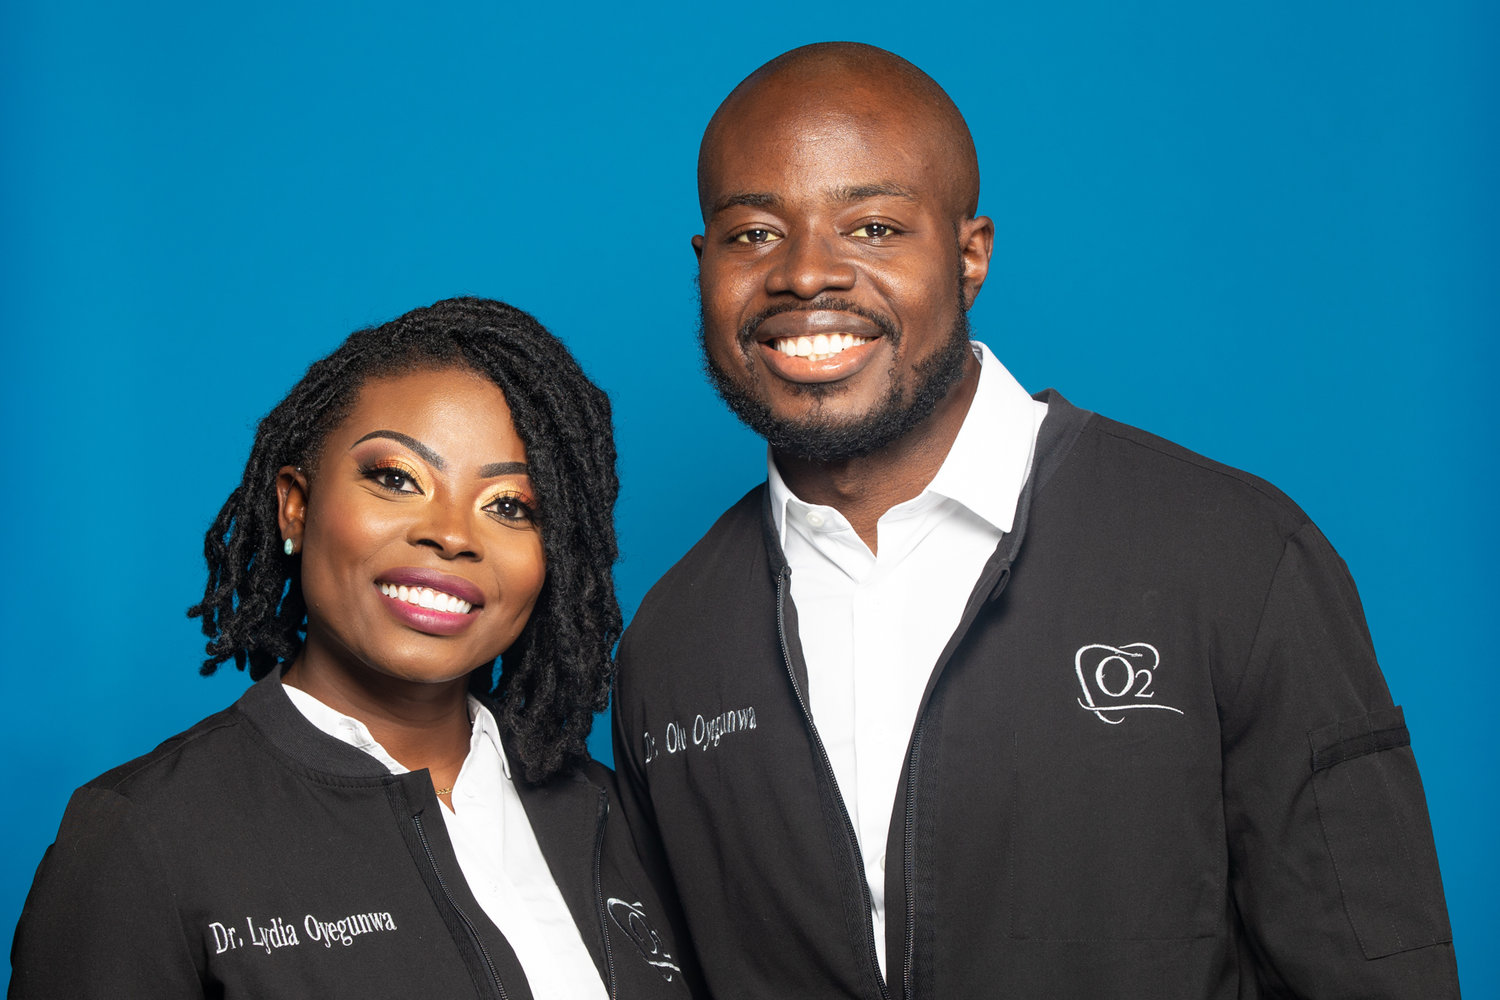 The husband-wife O2 dental team of Dr. Lydia Oyegunwa (left) and Dr. Olu Oyegunwa.